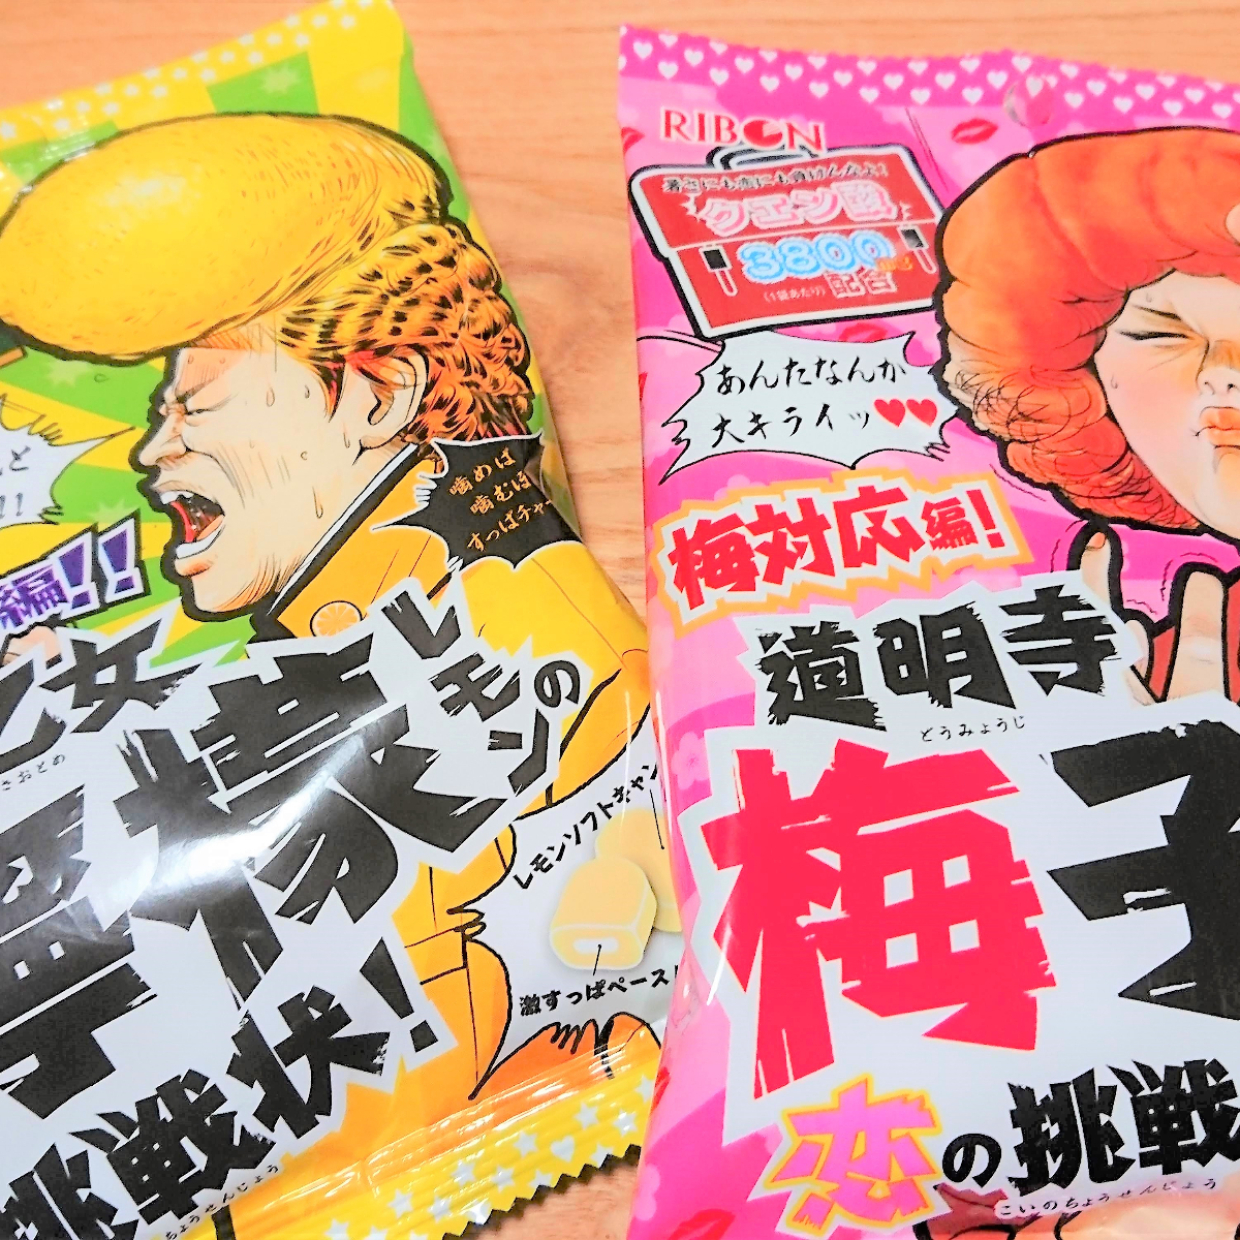  【ダイソー】「道明寺梅子の恋の挑戦状」と「早乙女檸檬の挑戦状」という謎のキャンディを買ってみた 